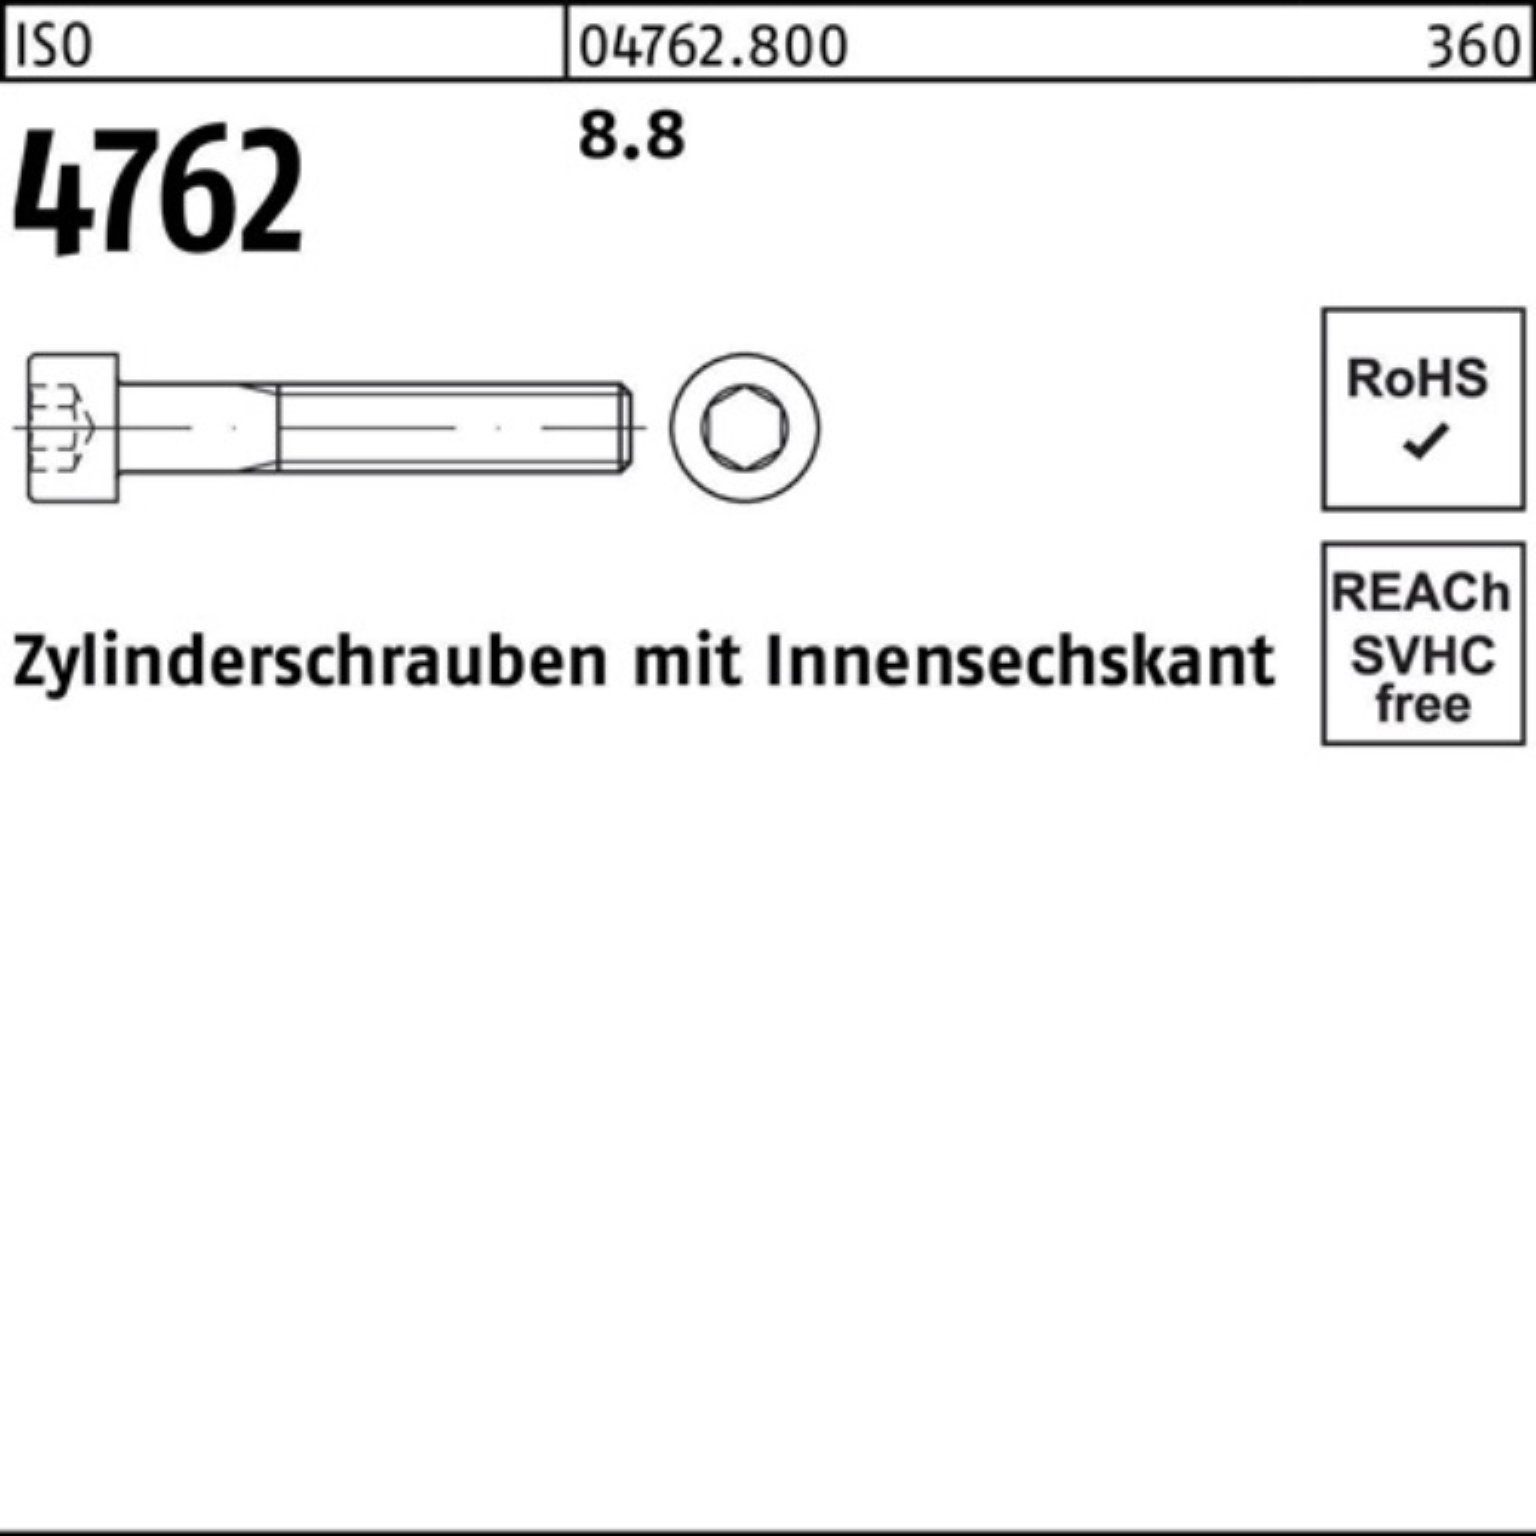 170 Pack Stück 1 M36x 8.8 I Zylinderschraube Innen-6kt Zylinderschraube 100er Reyher 4762 ISO